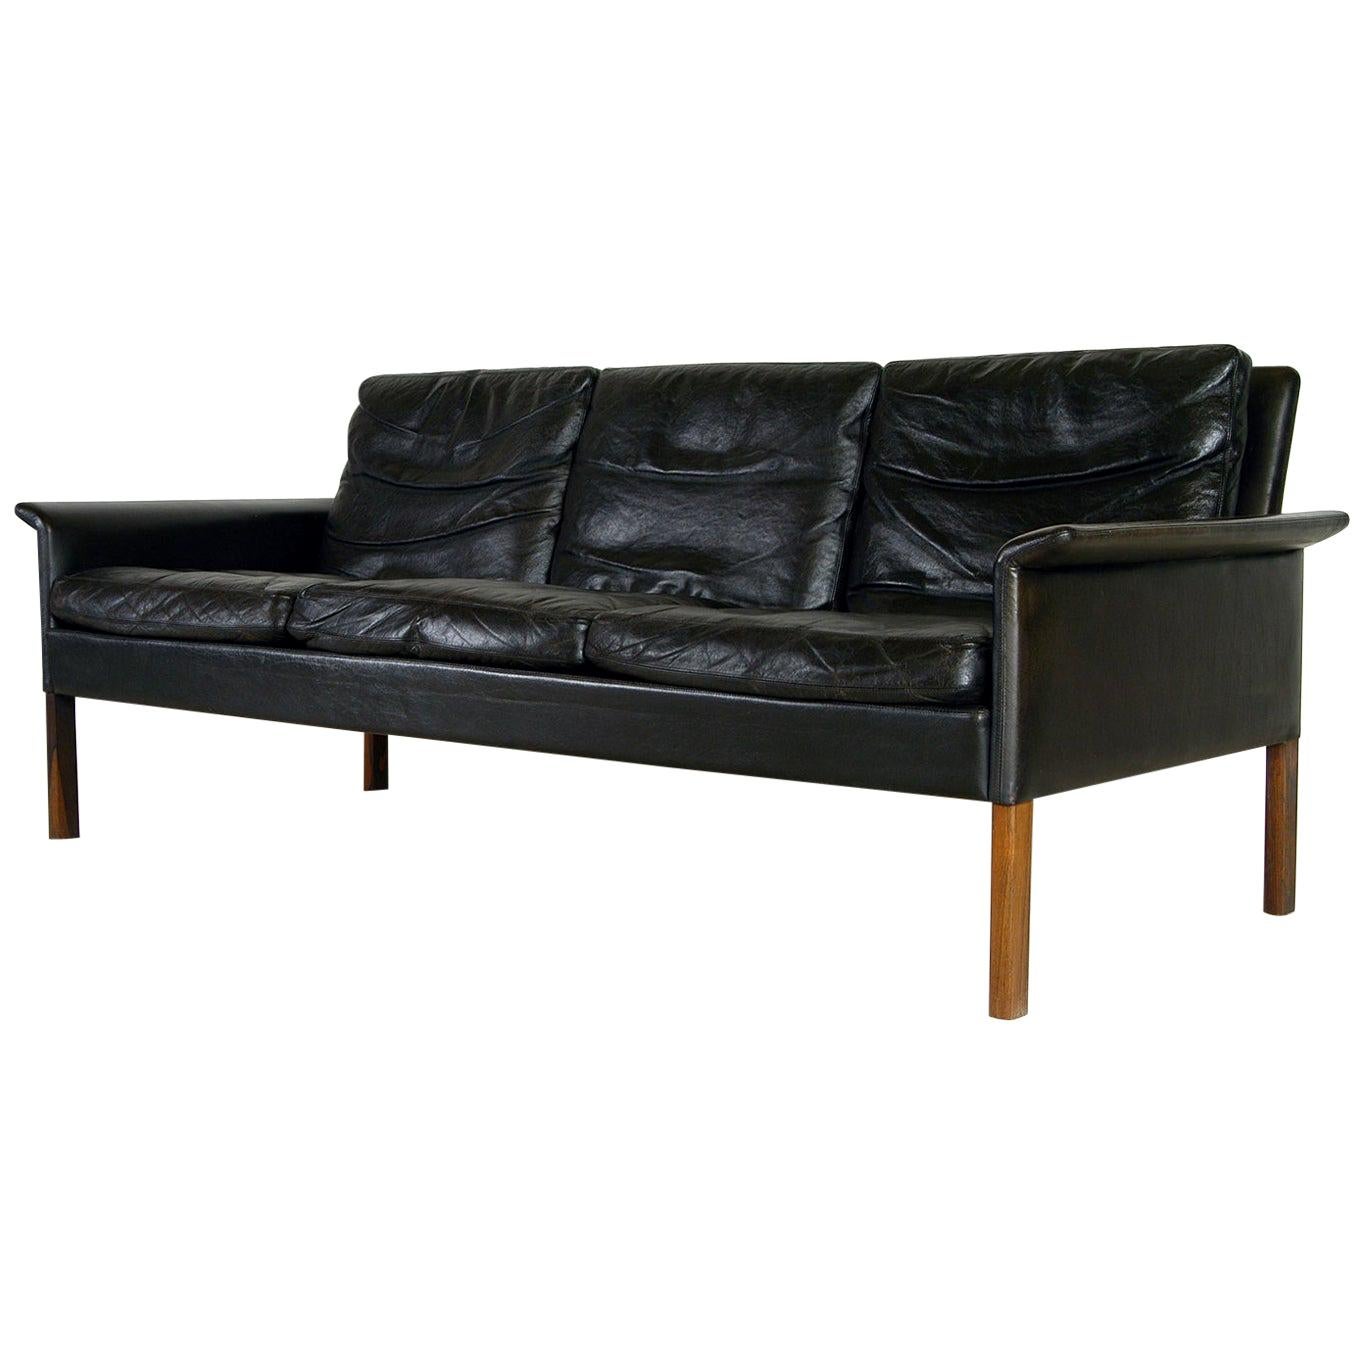 1960s Danish Midcentury Black Leather Sofa by Hans Olsen for Christian Sorensen